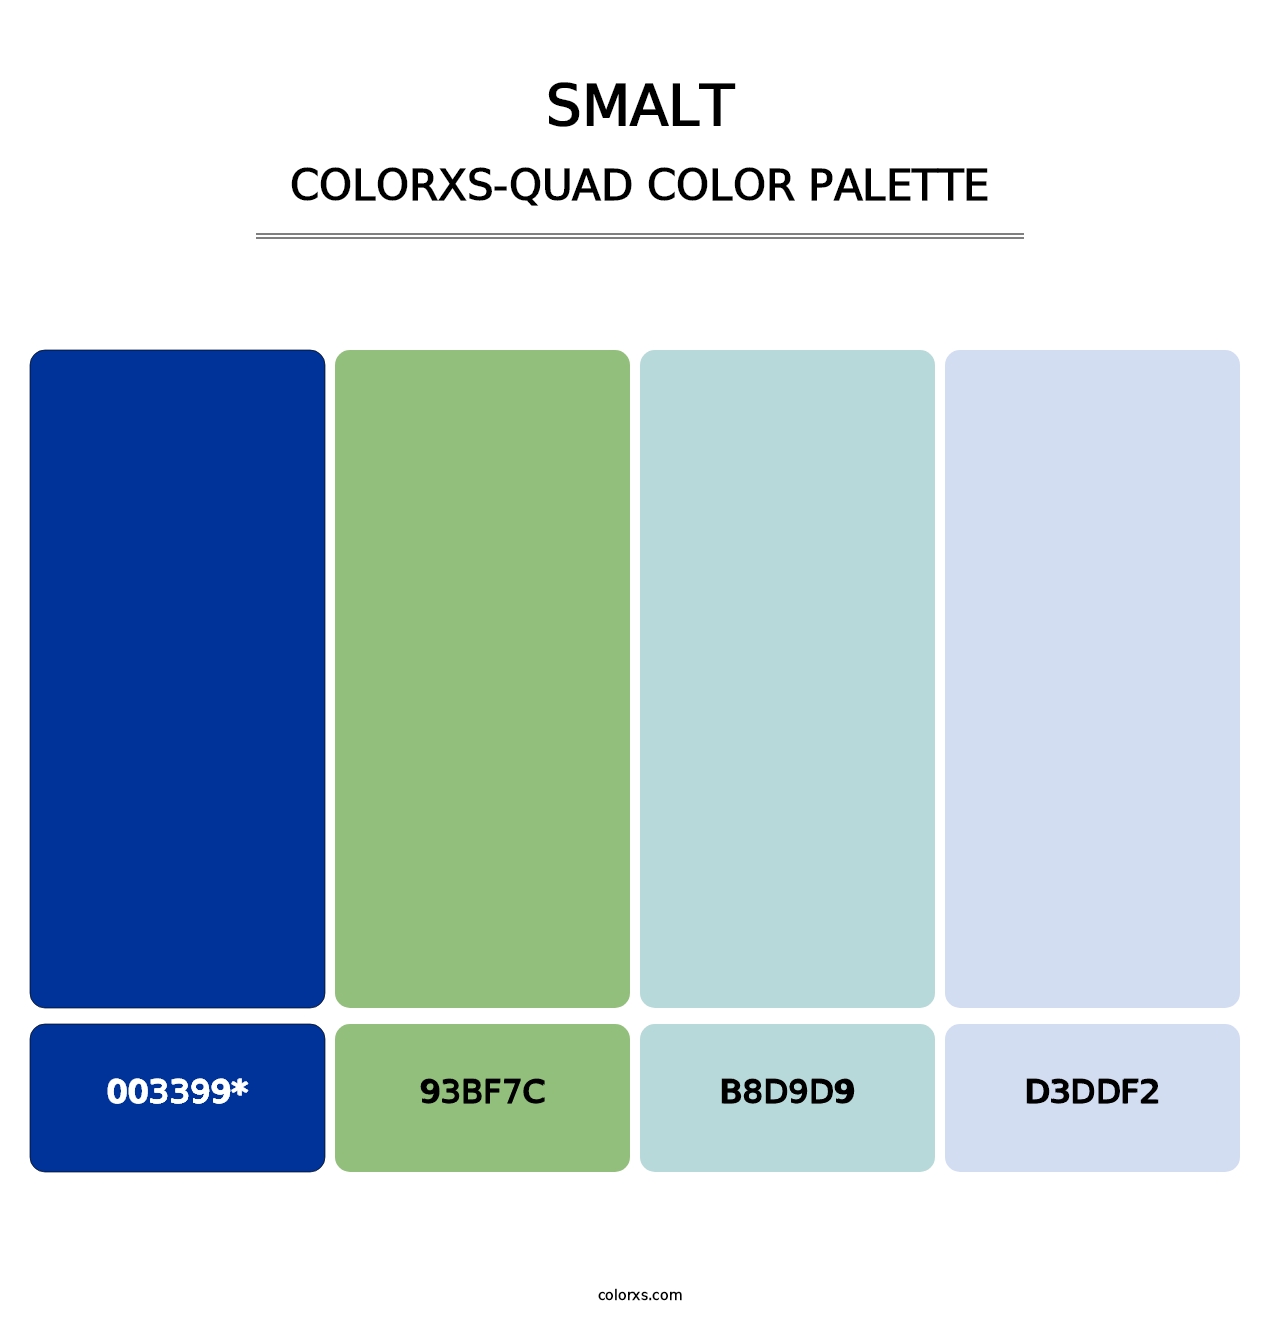 Smalt - Colorxs Quad Palette